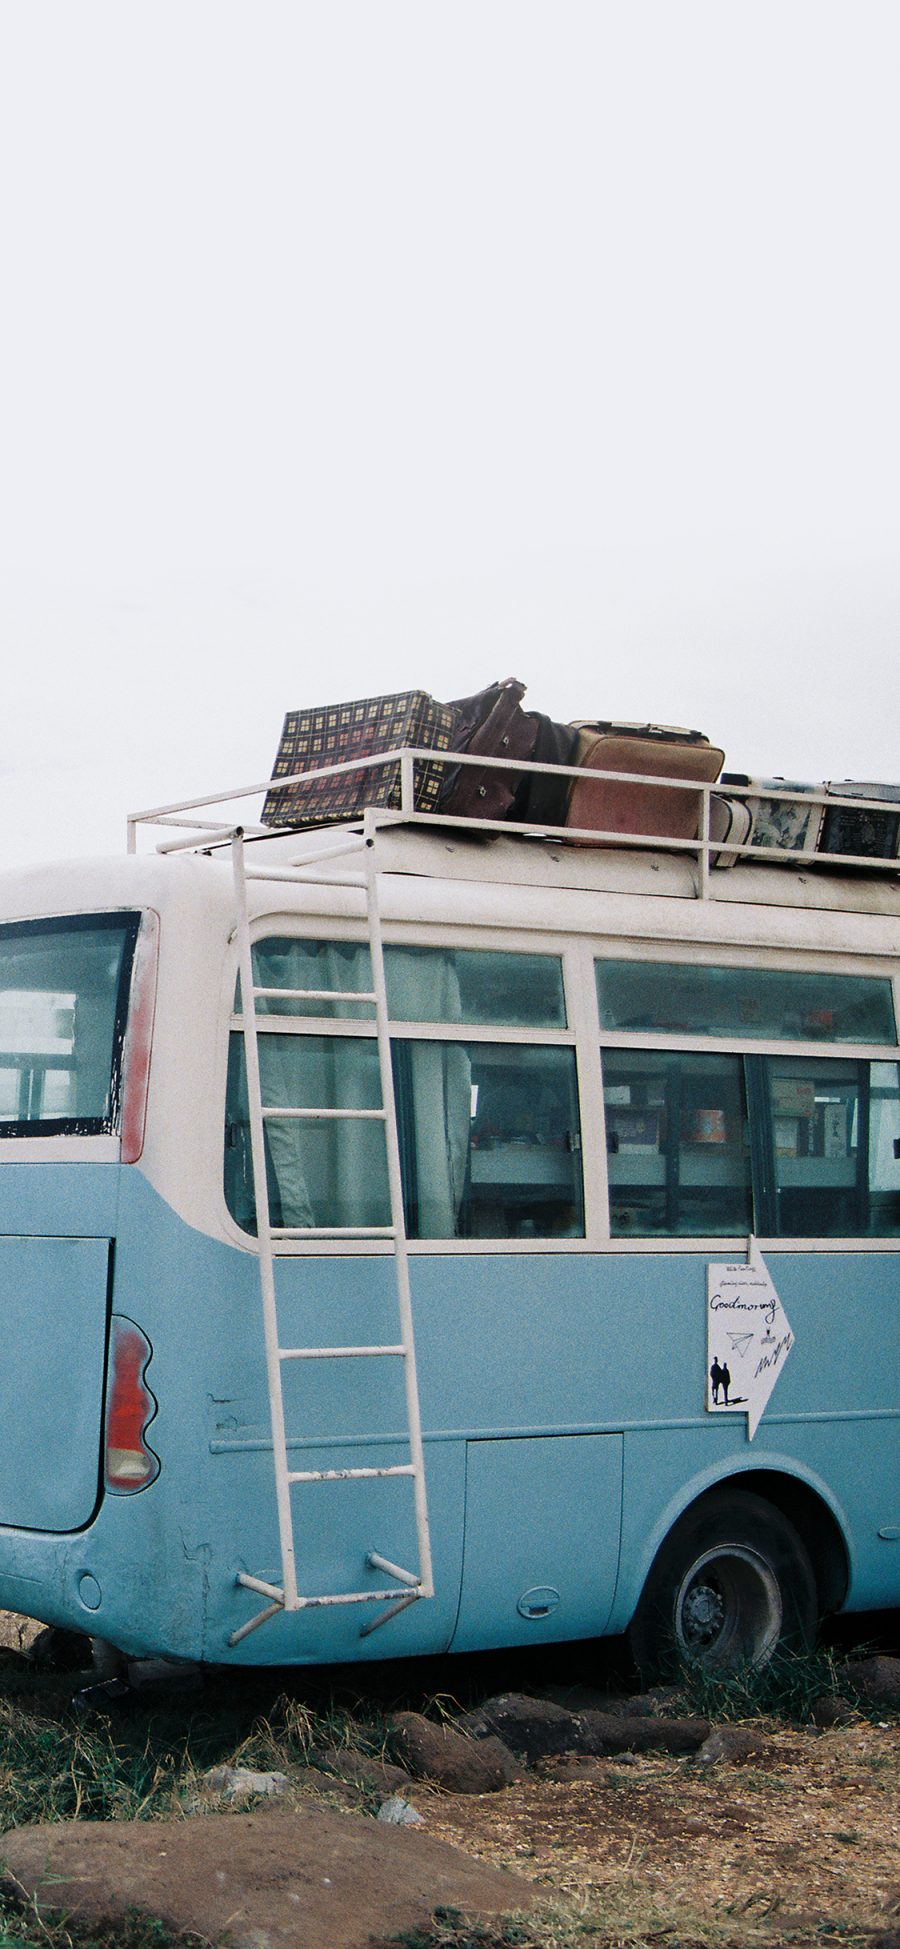 [2436×1125]巴士 旅行 箱子 汽车 海岛 苹果手机壁纸图片